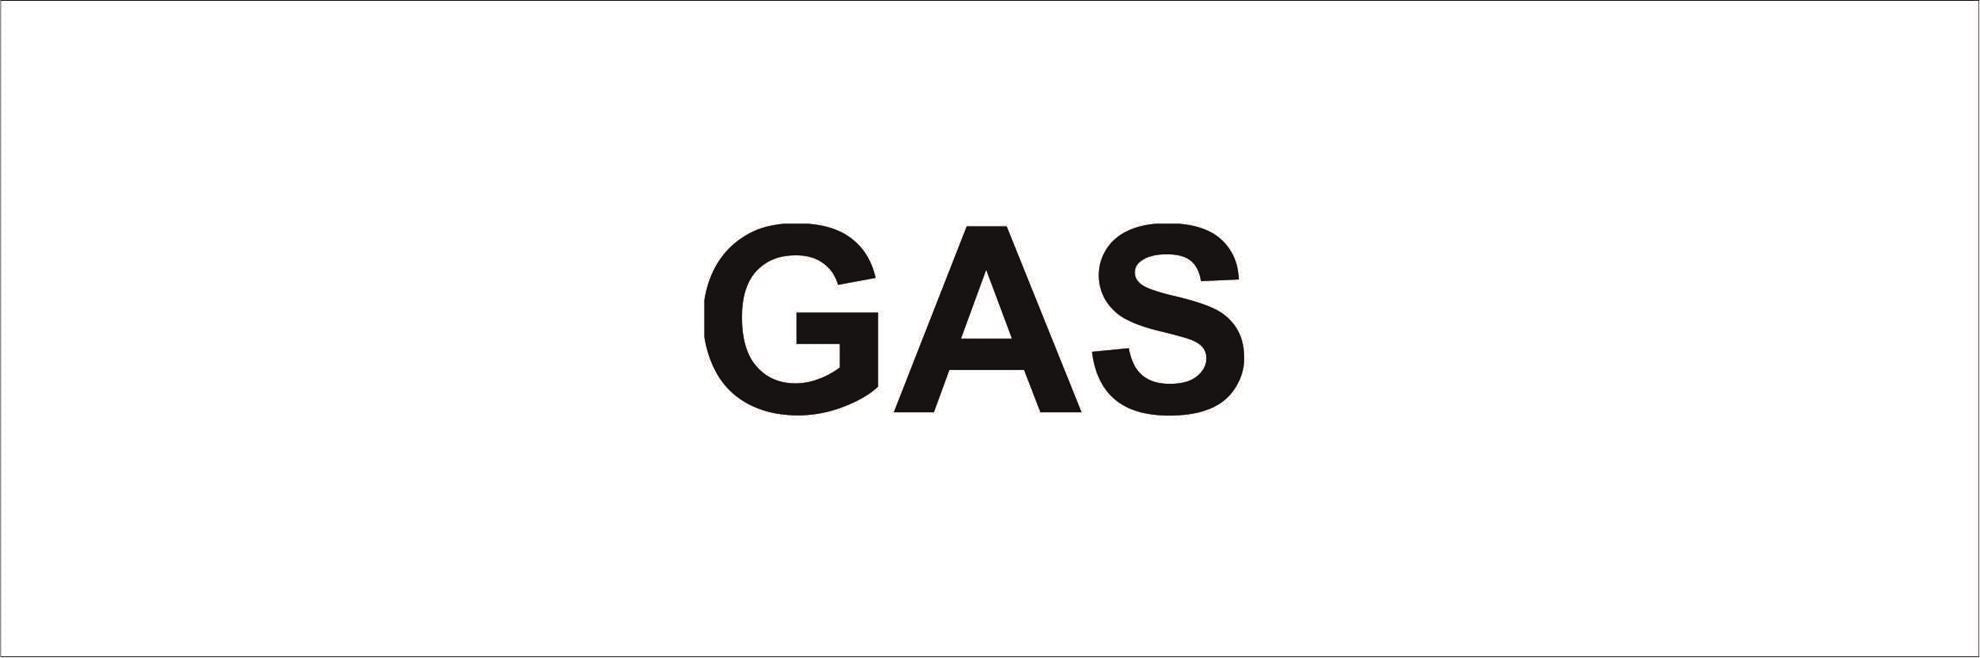 Pipeline Marking Label - GAS